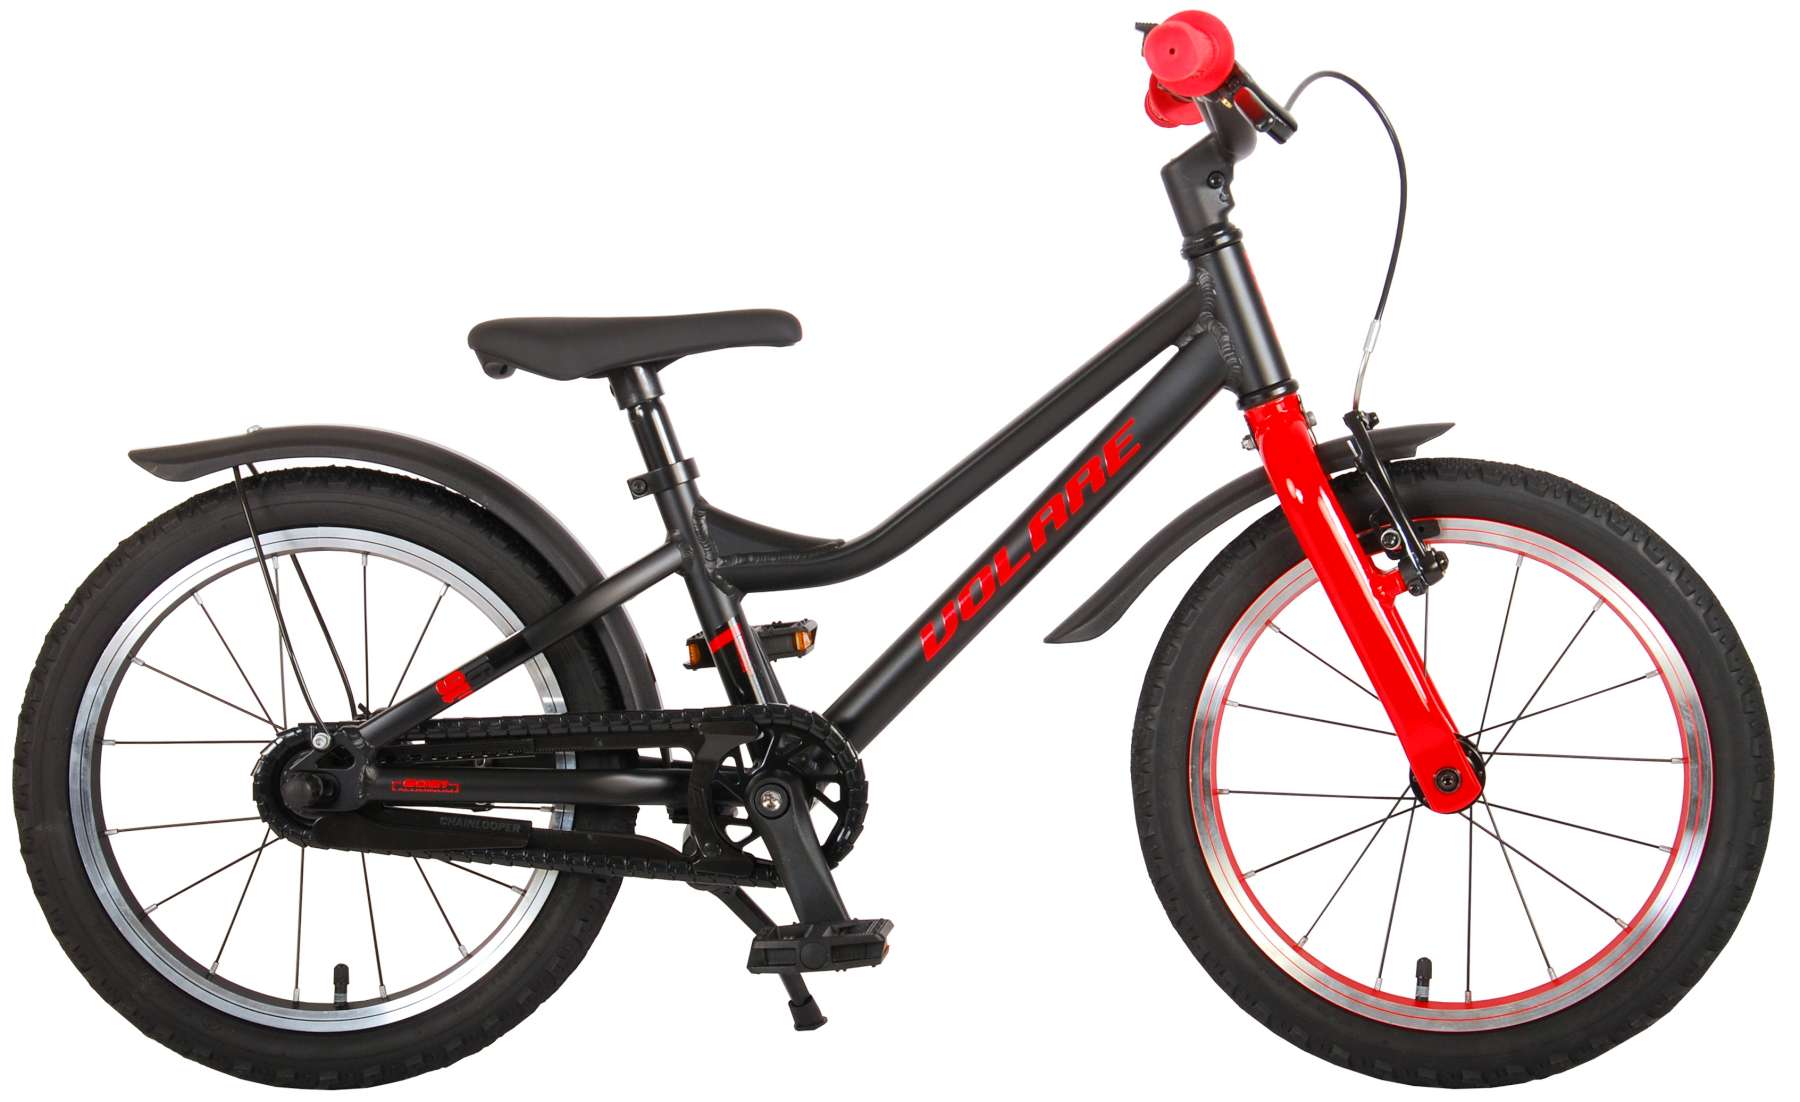 Bicicleta volare blaster pentru copii - baieti - 16 inch - negru rosu - colectia prime culoare rosu/negru